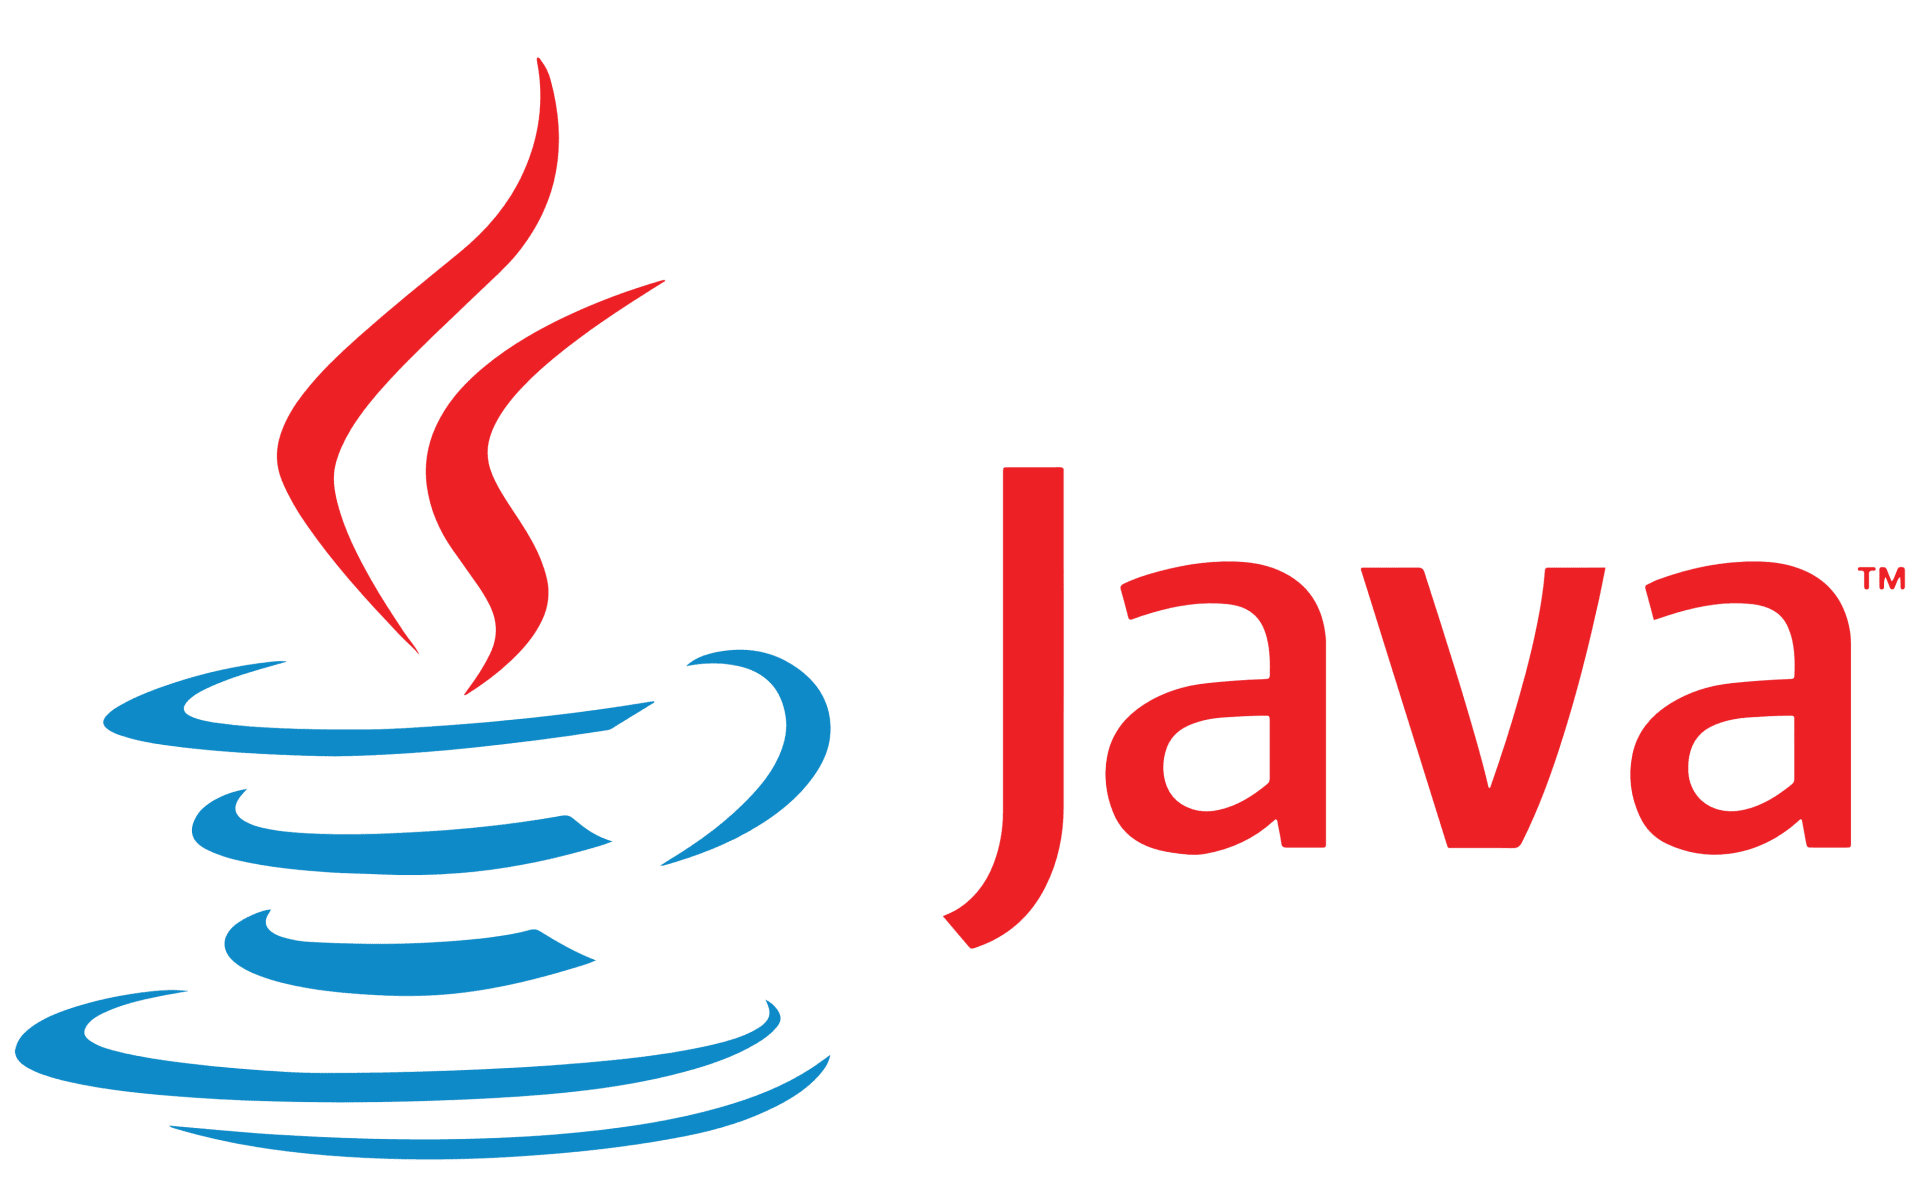 Java host